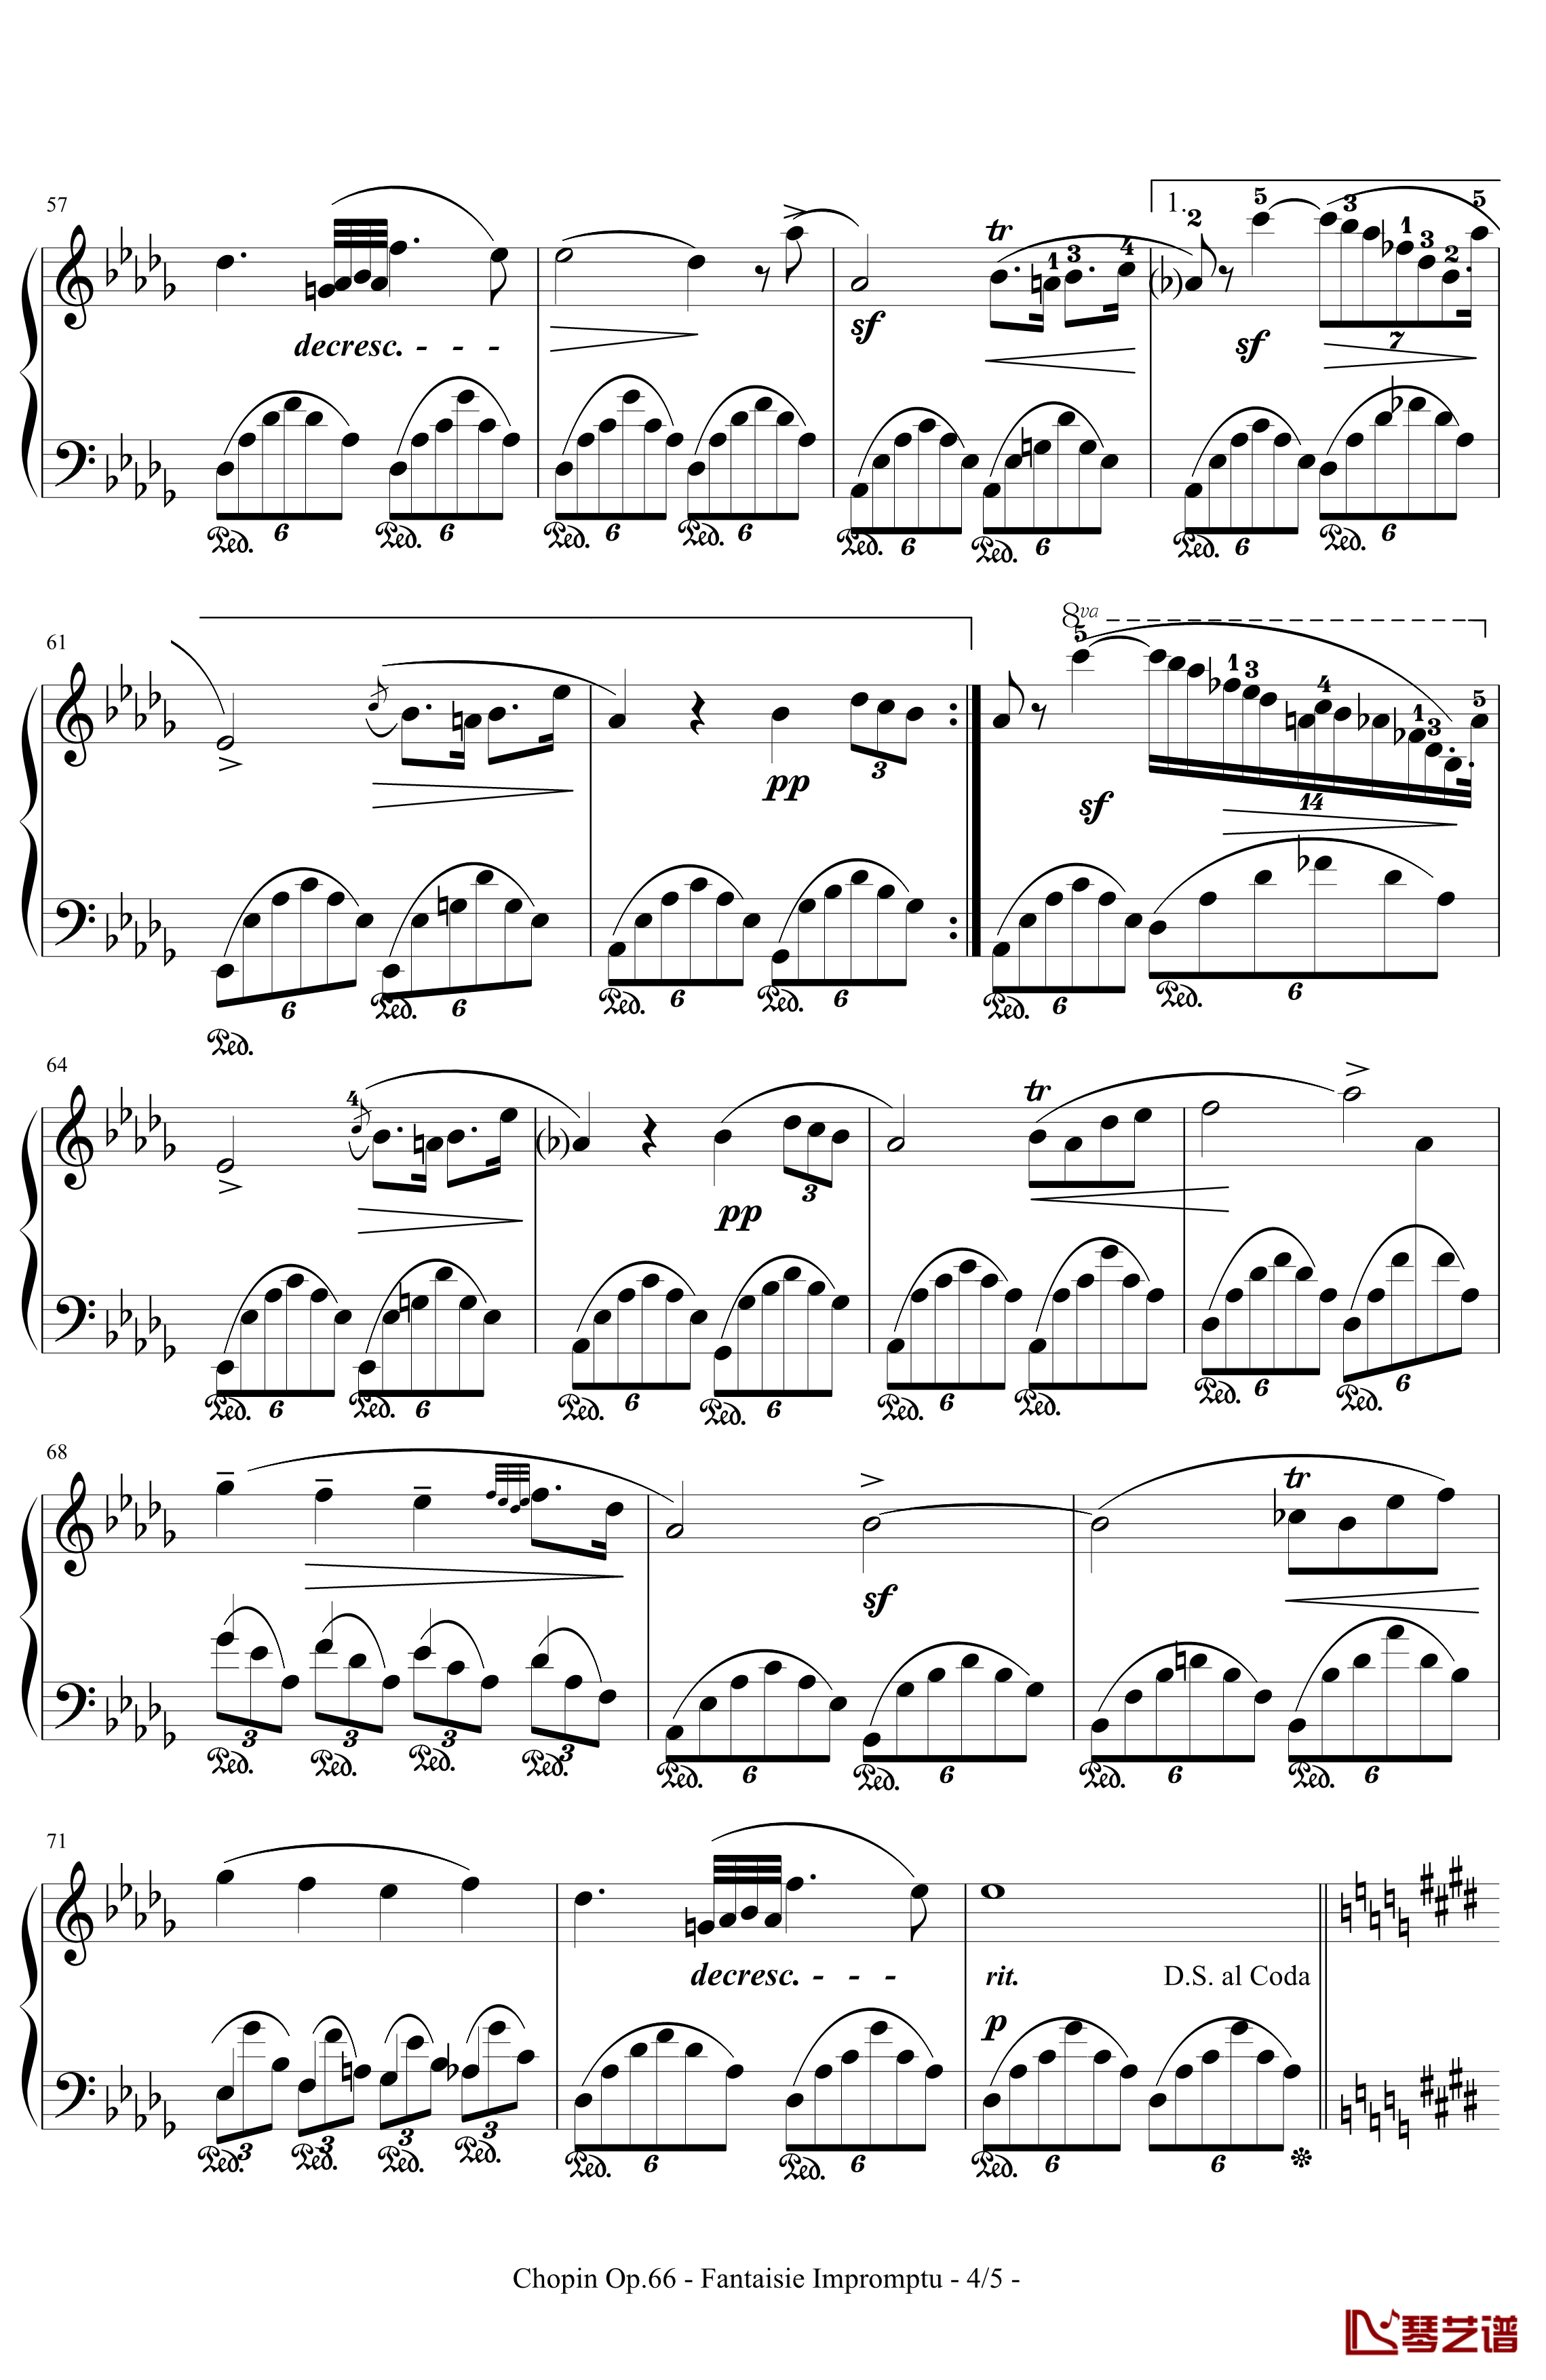 即兴幻想曲钢琴谱-带指法-Op.66-肖邦-chopin4